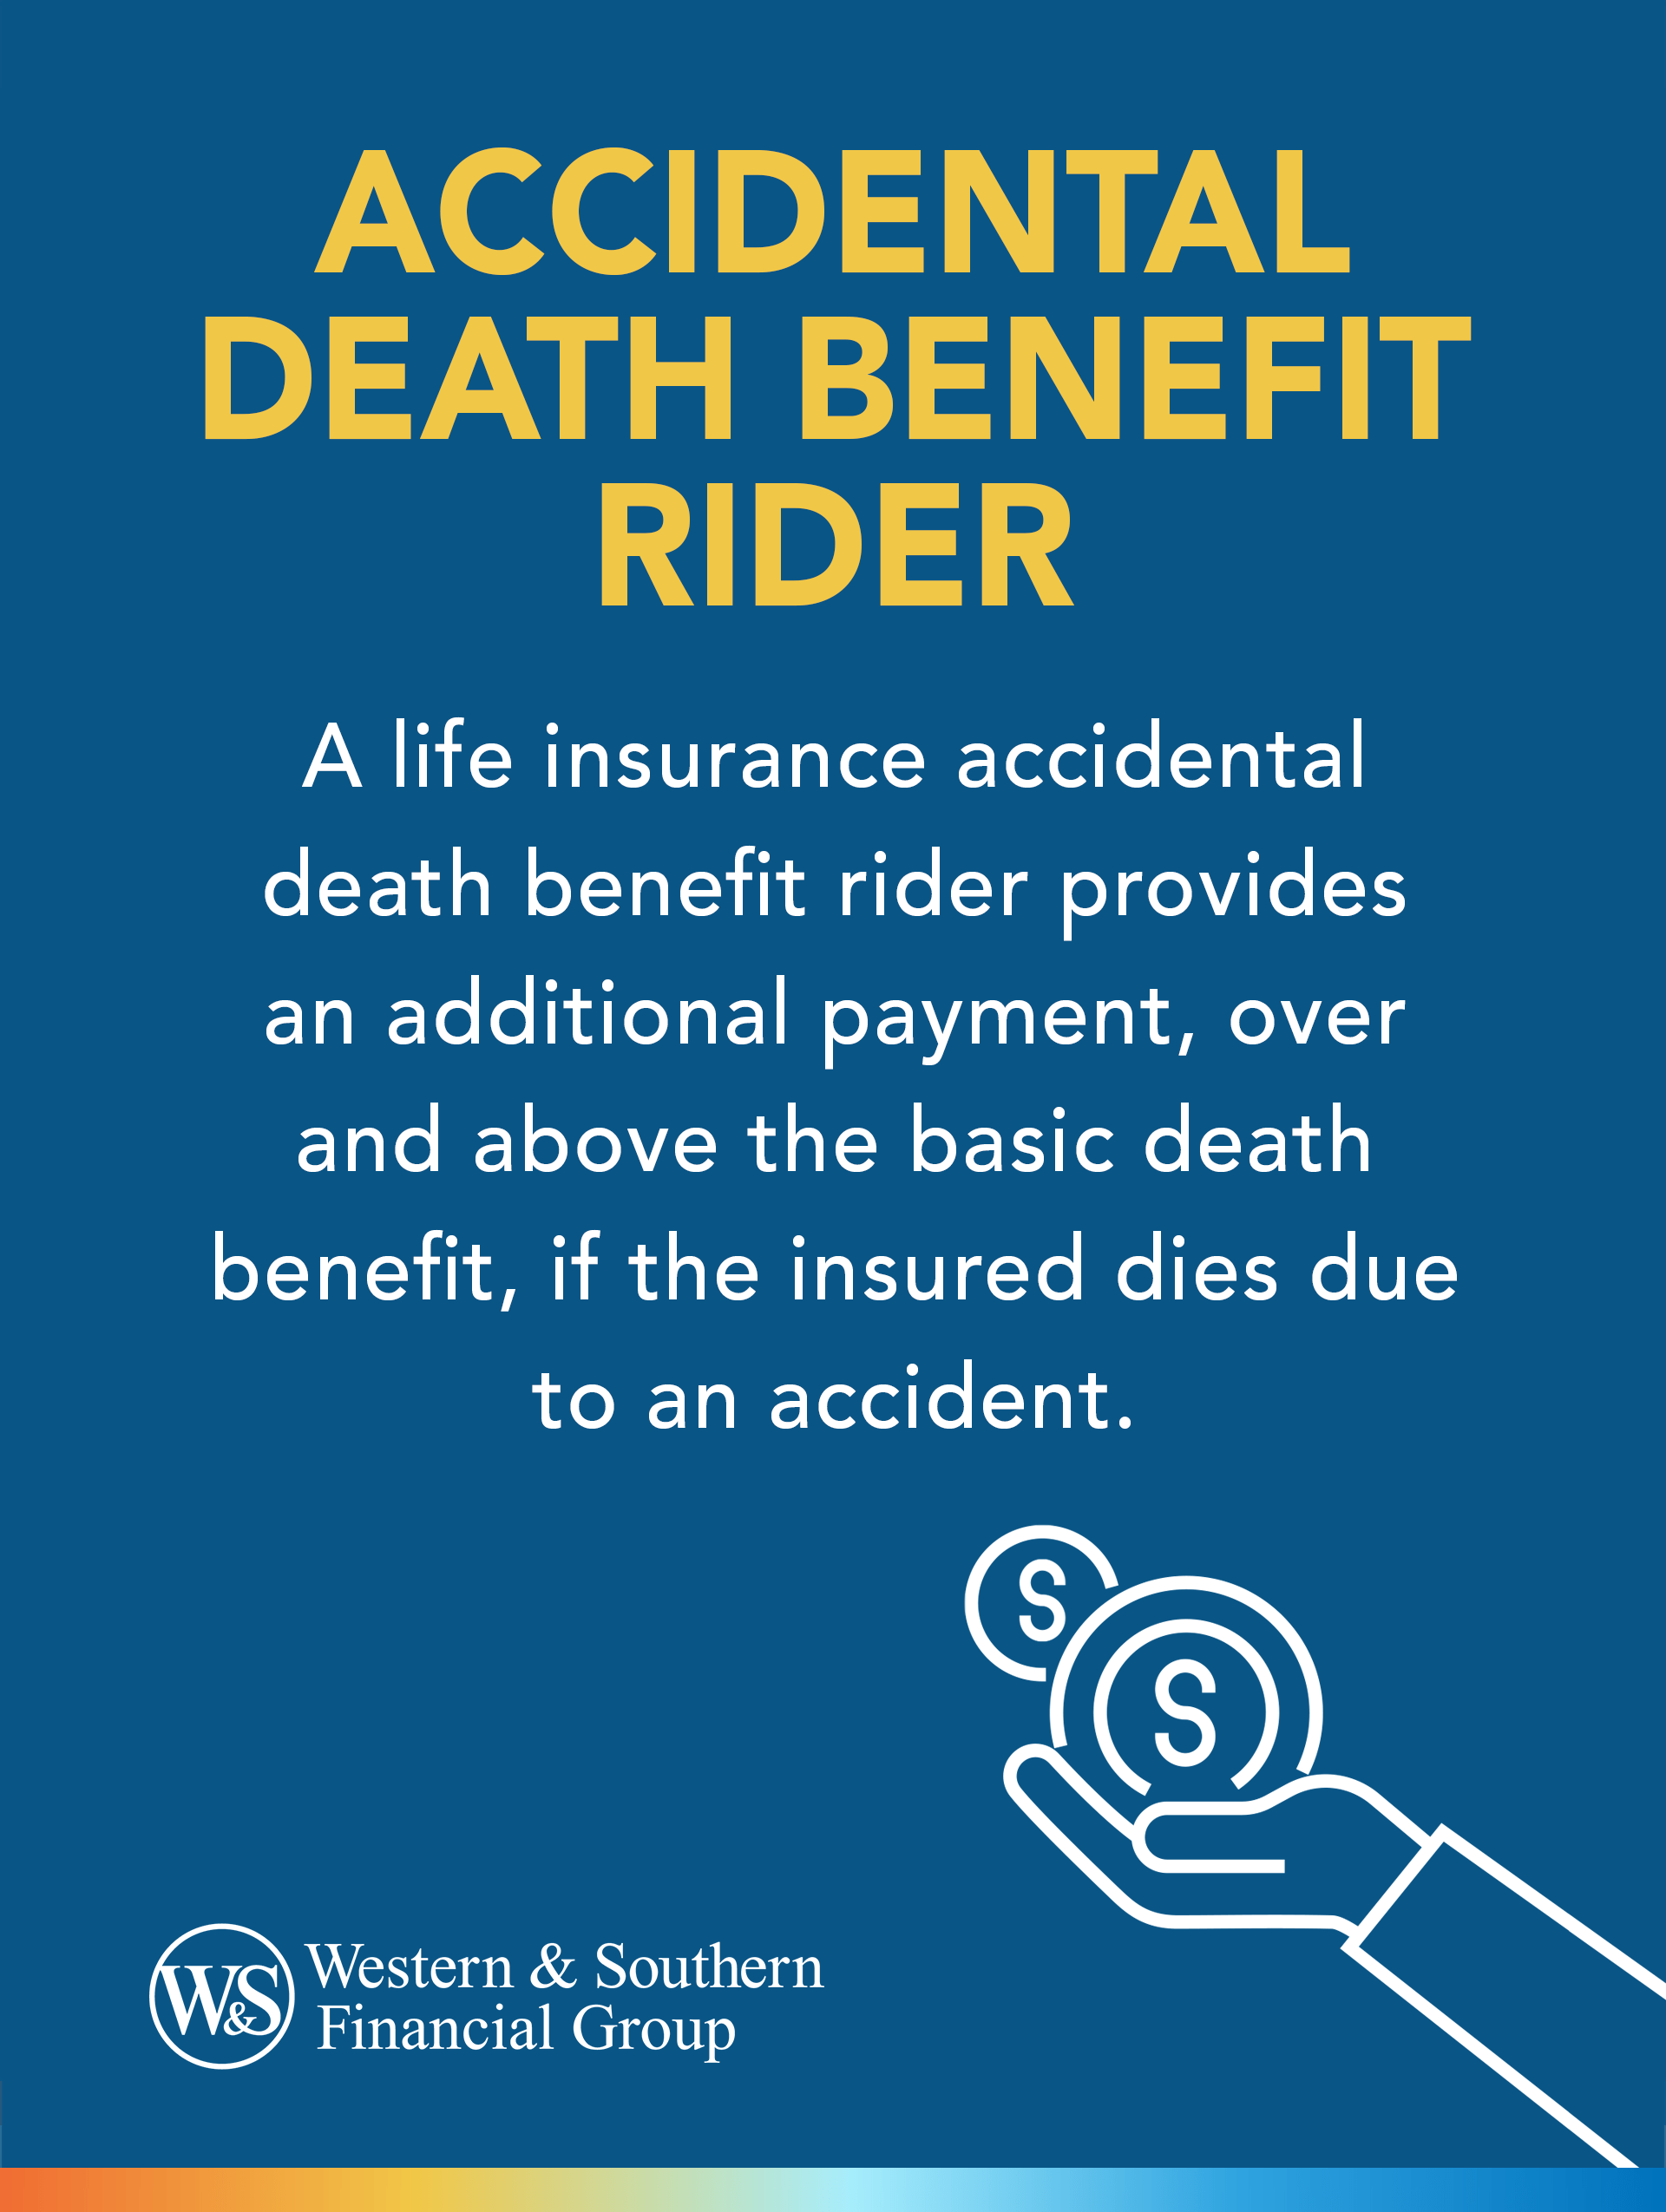 Accidental Death Benefits Rider Definition